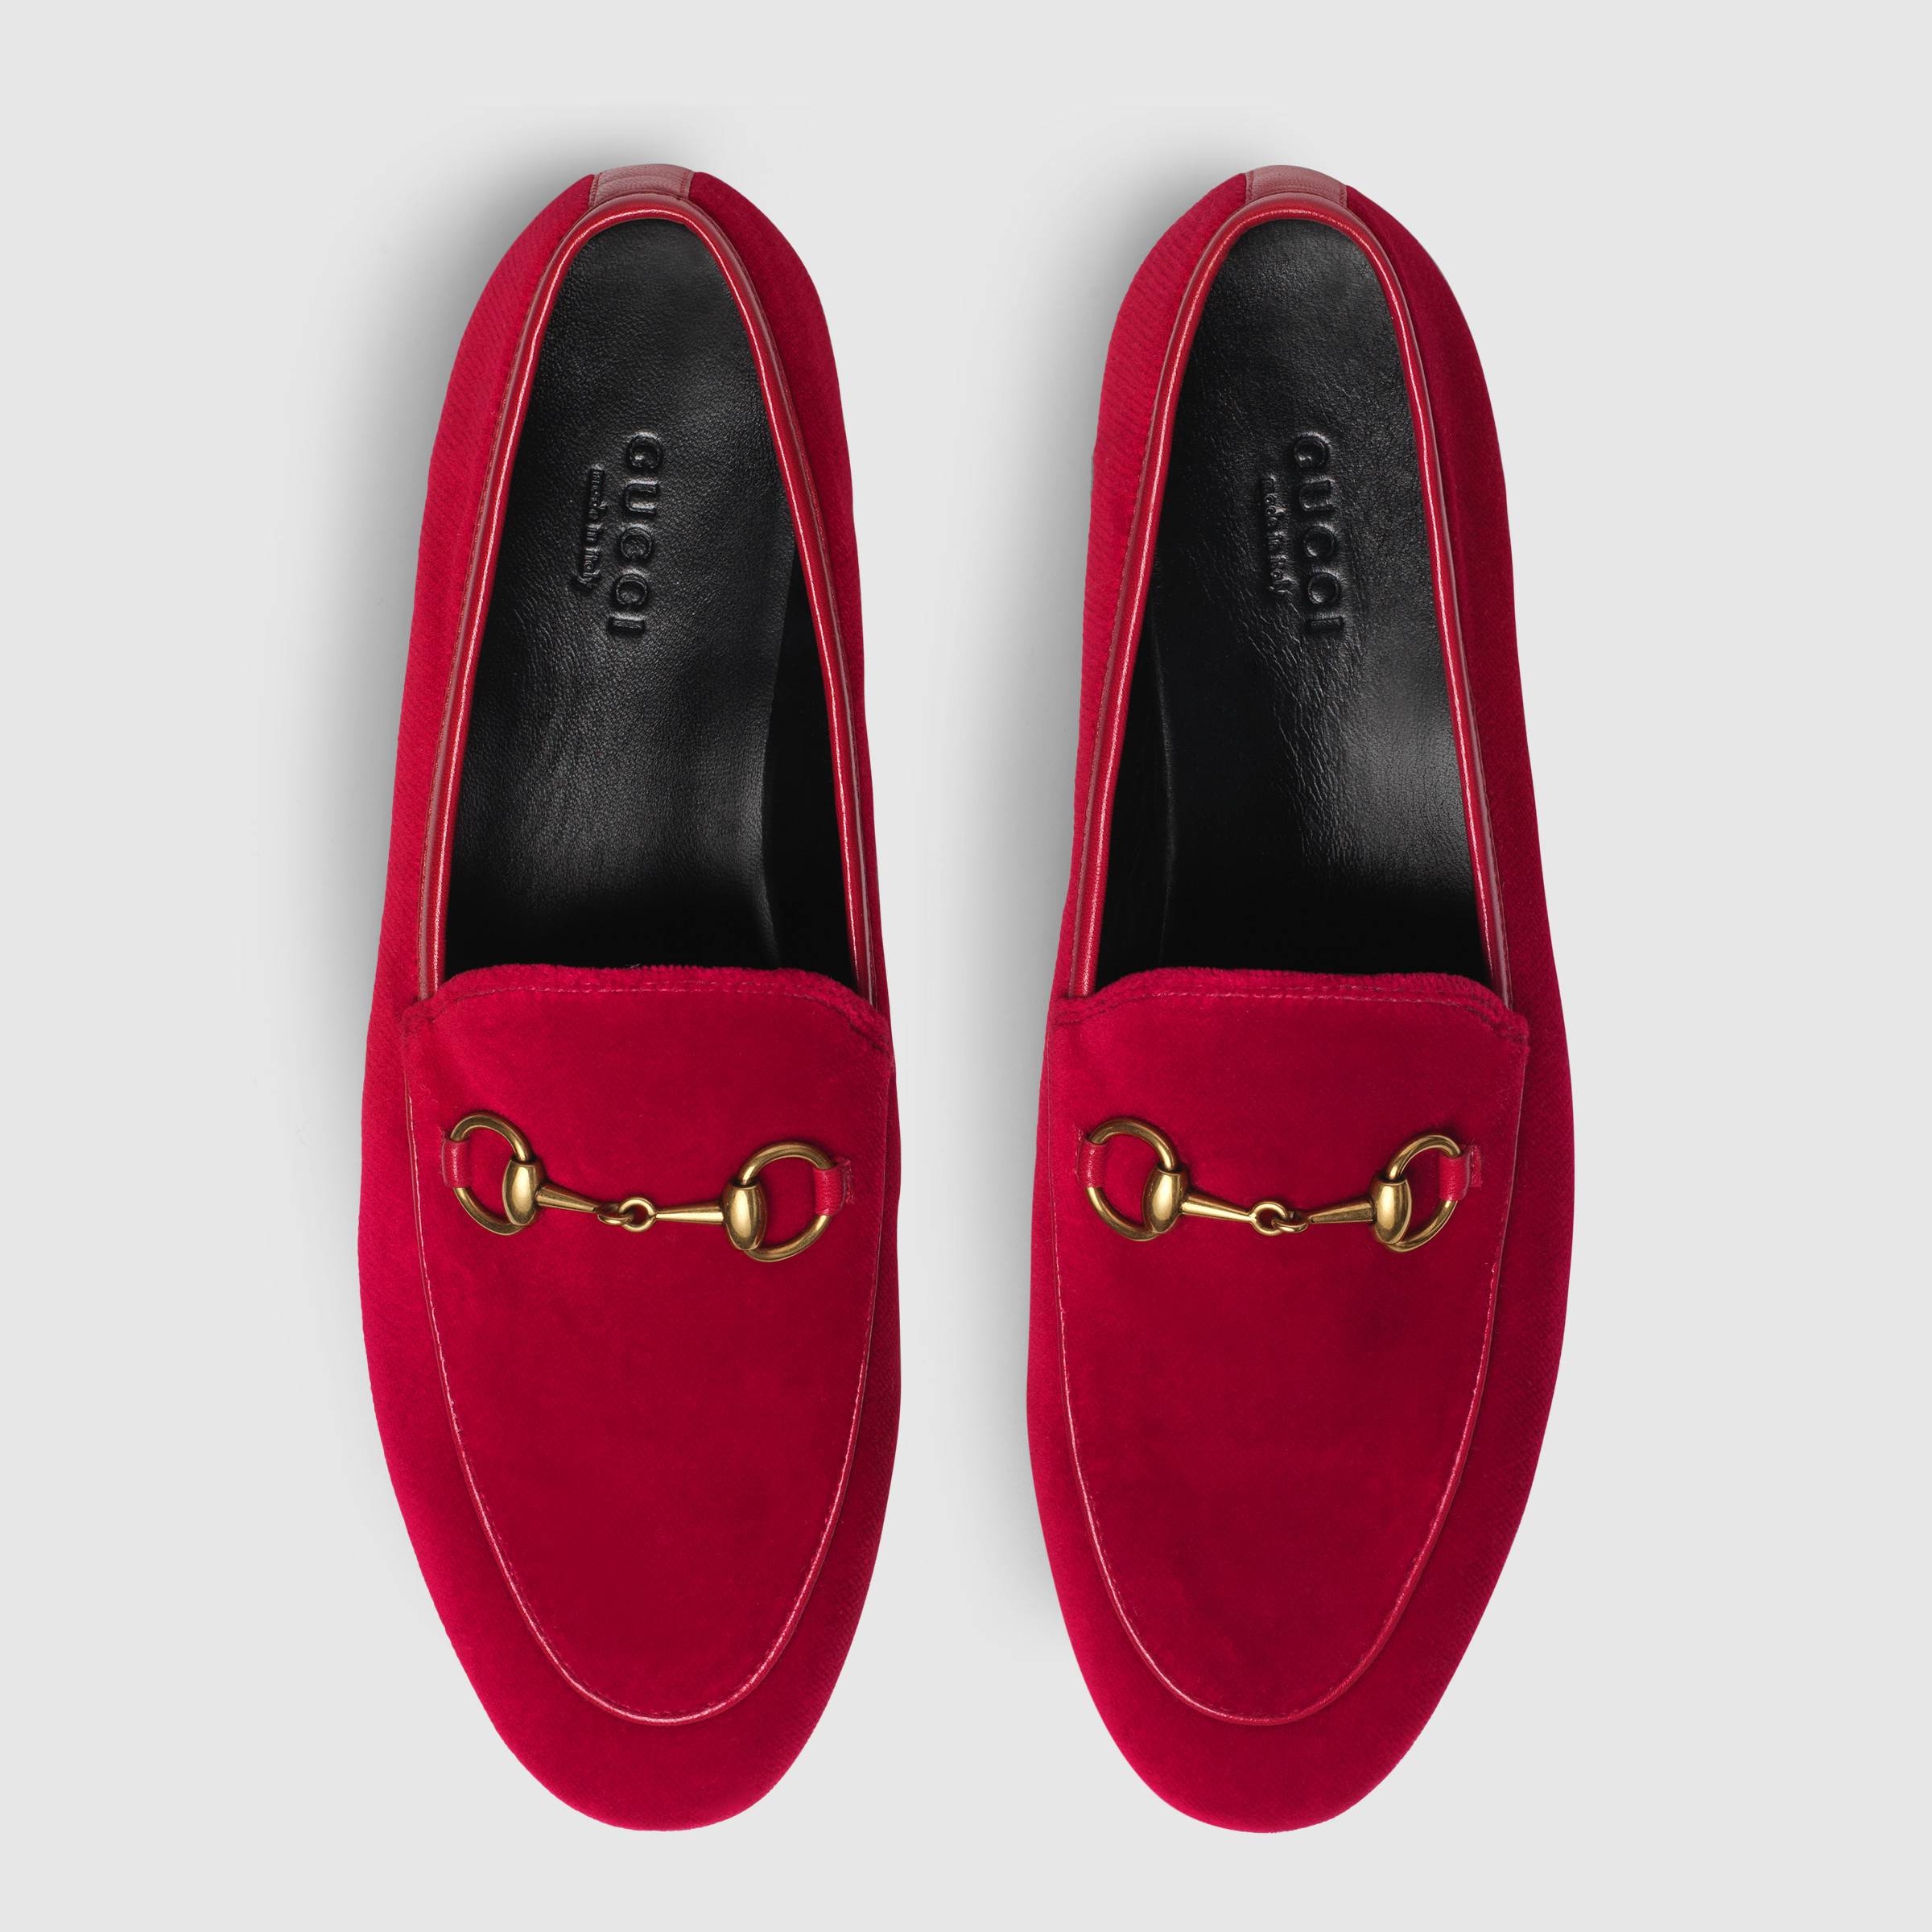 elektrode fisk og skaldyr Premonition Designer Shoes And Their Dupes #1 Gucci Loafers — Cafe Carrie | Fashion  Lifestyle Blog